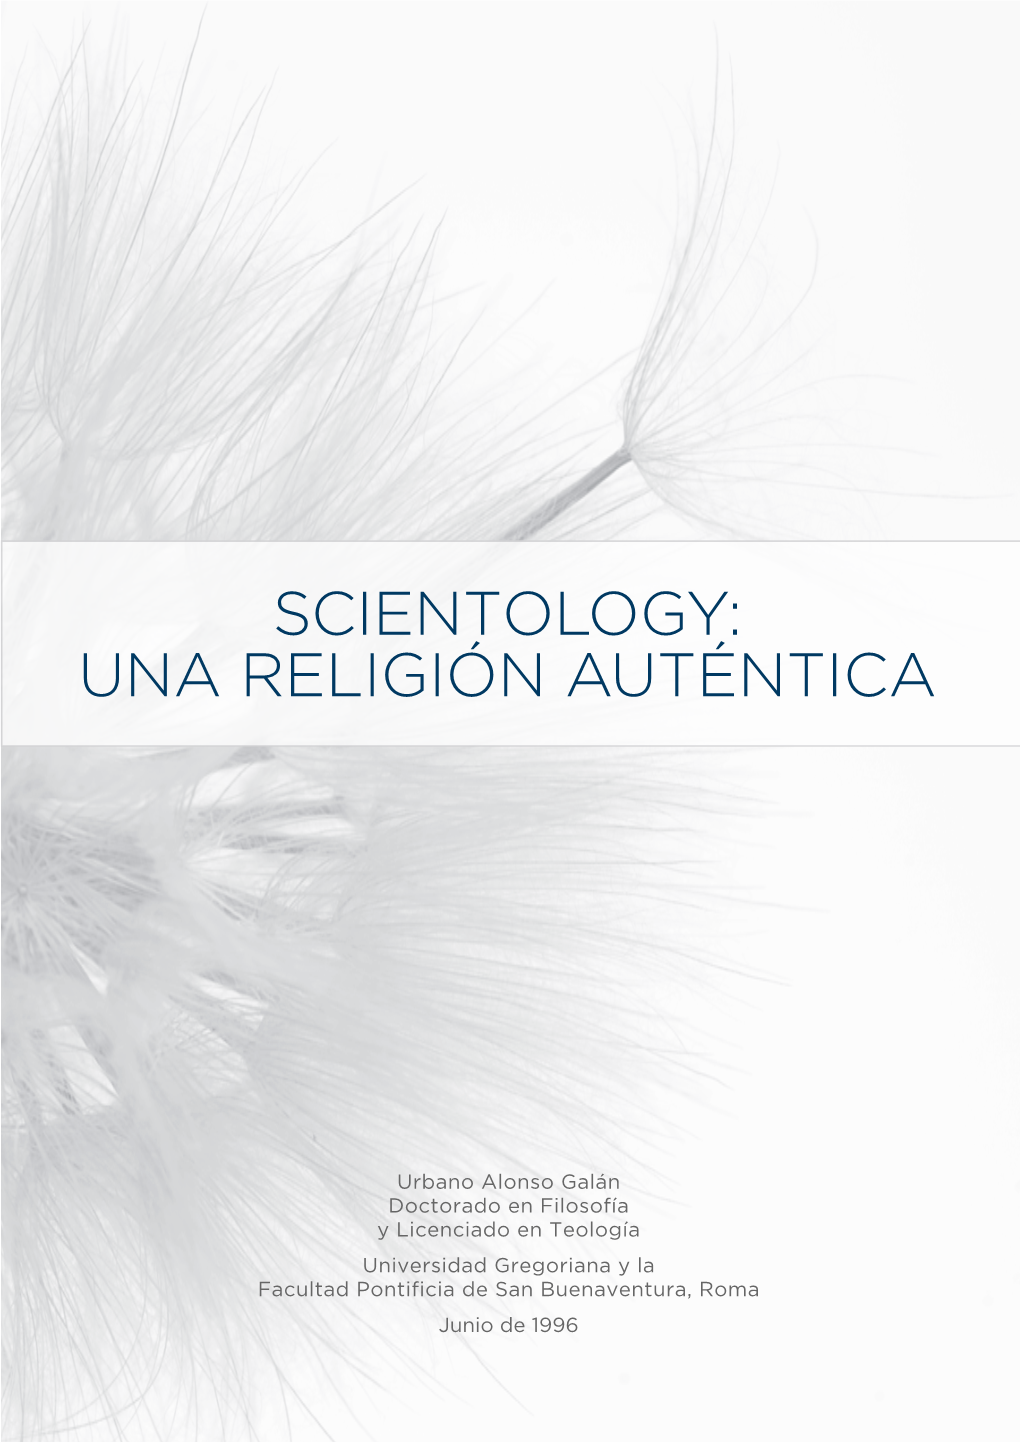 Scientology: Una Religión Auténtica